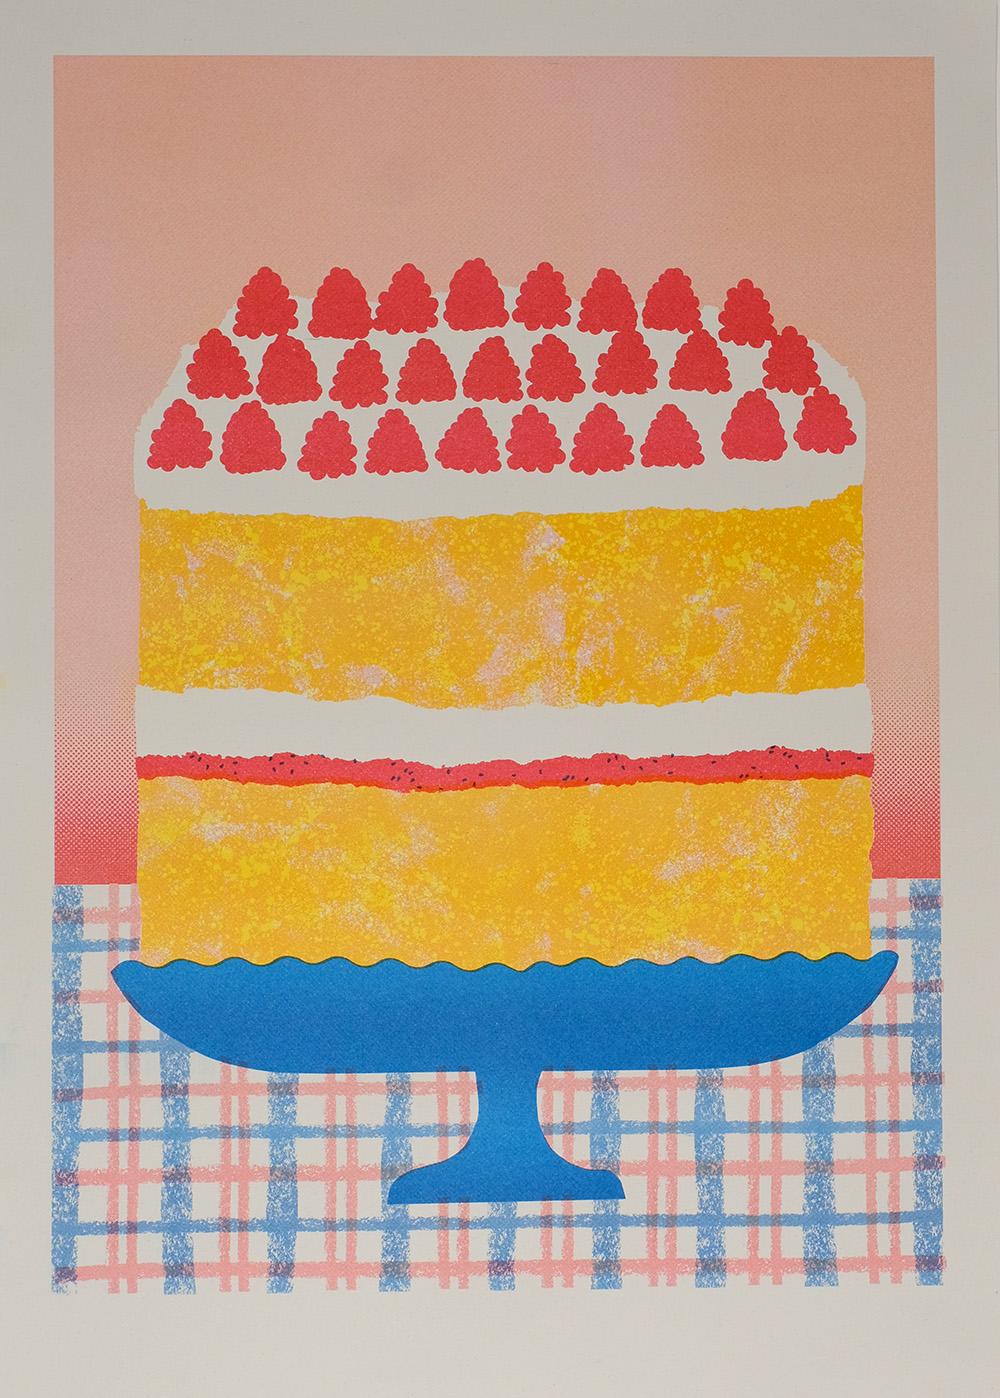 Victoria Sponge Cake Risograph Print